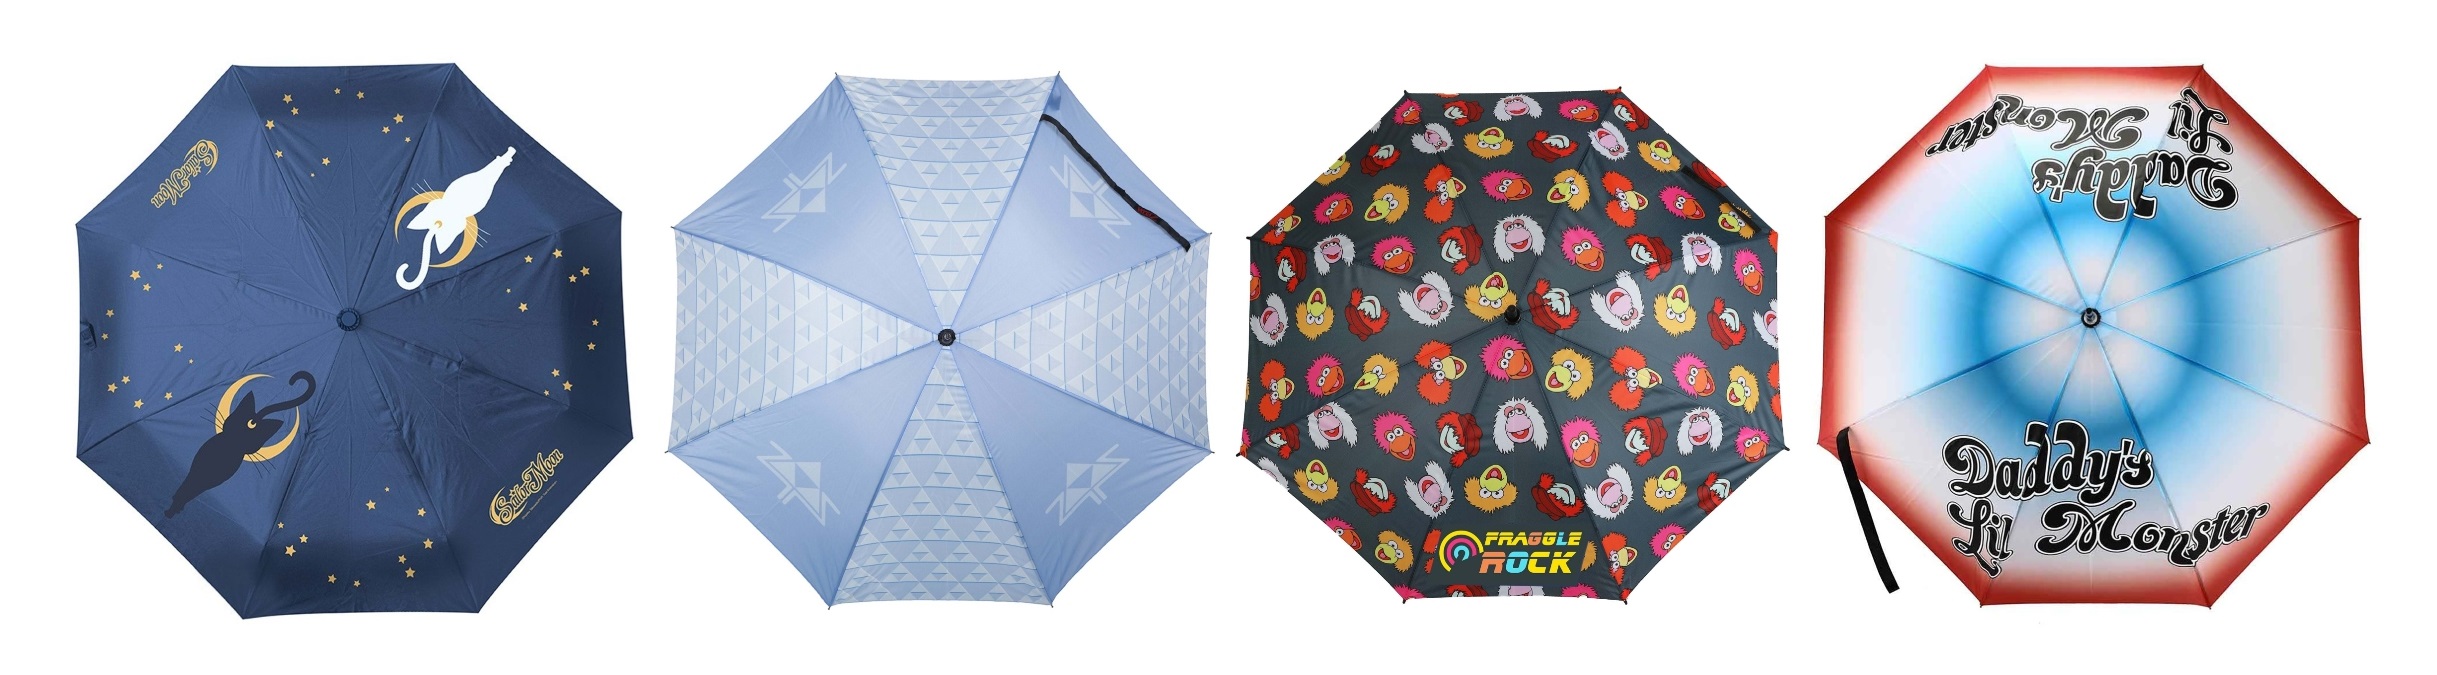 Unique Umbrellas